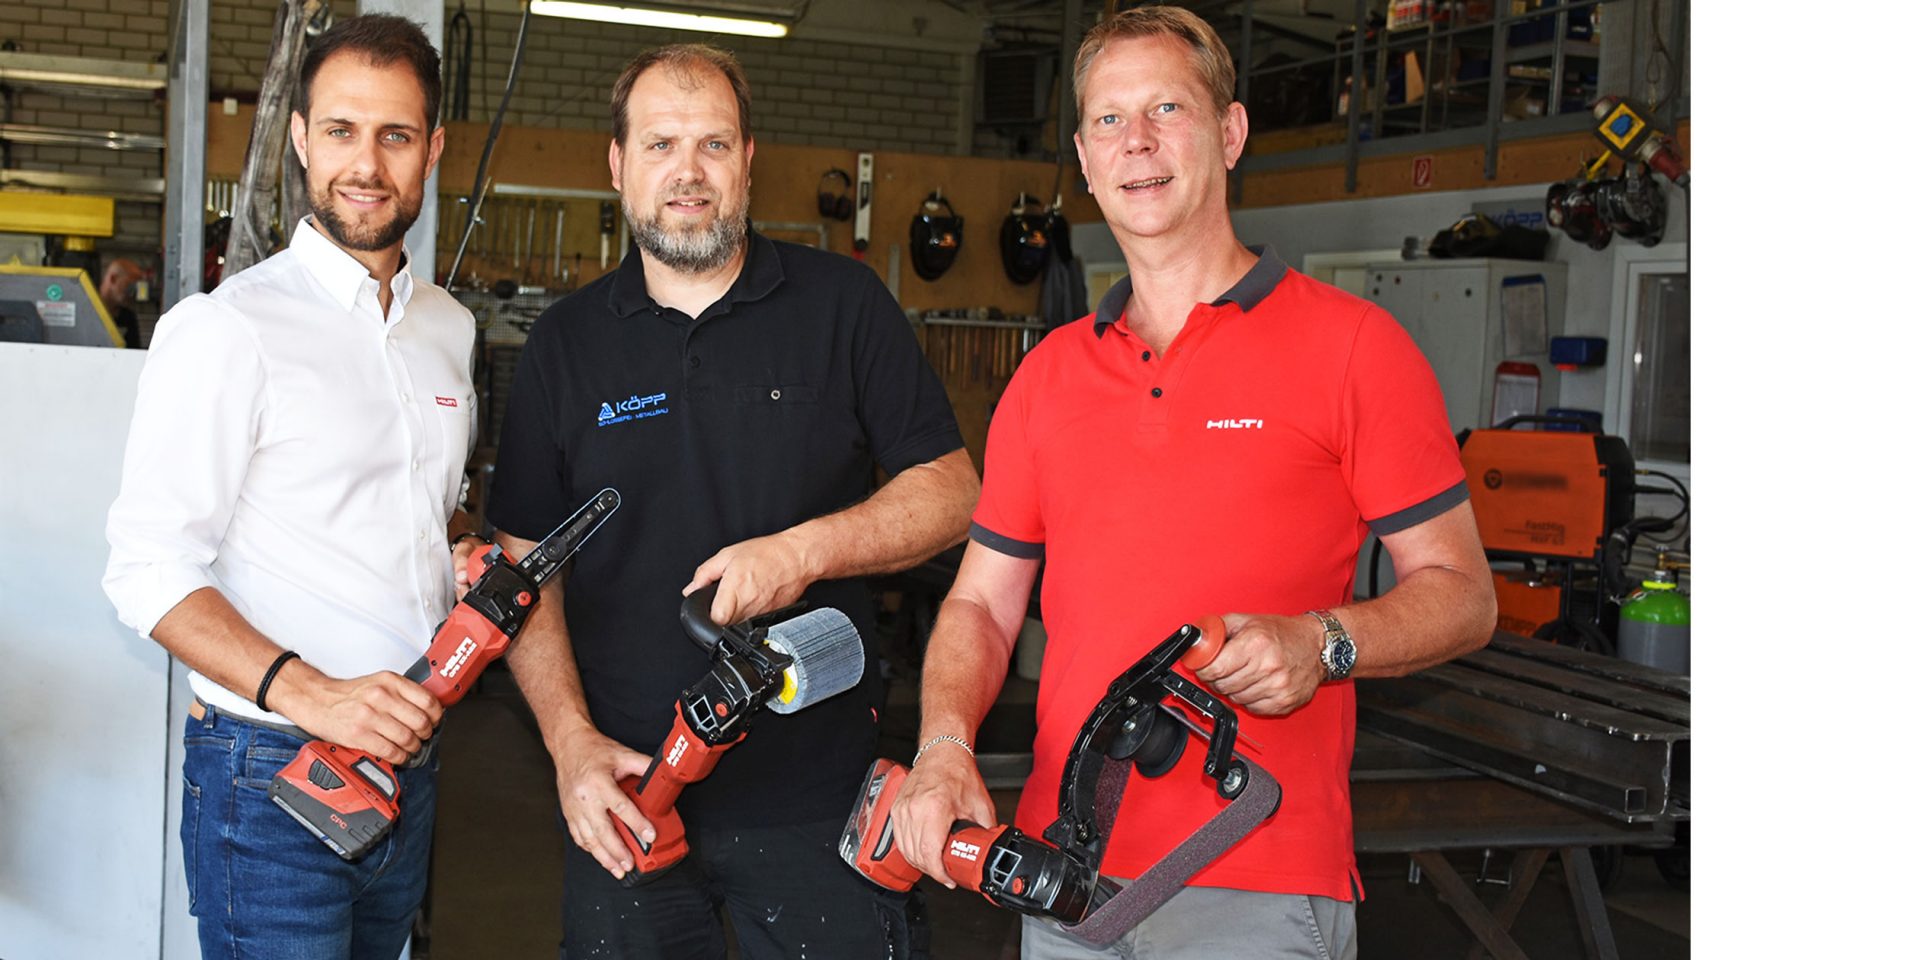 Nico Landwehrjohann, productmanager voor accu-technologie bij Hilti (links) en Jörg Brings, Hilti-verkoopmanager (rechts) geven de nieuwe accu-schuurmachines aan Andreas Köpp, bedrijfsleider van Köpp Schlosserei-Metallbau GmbH